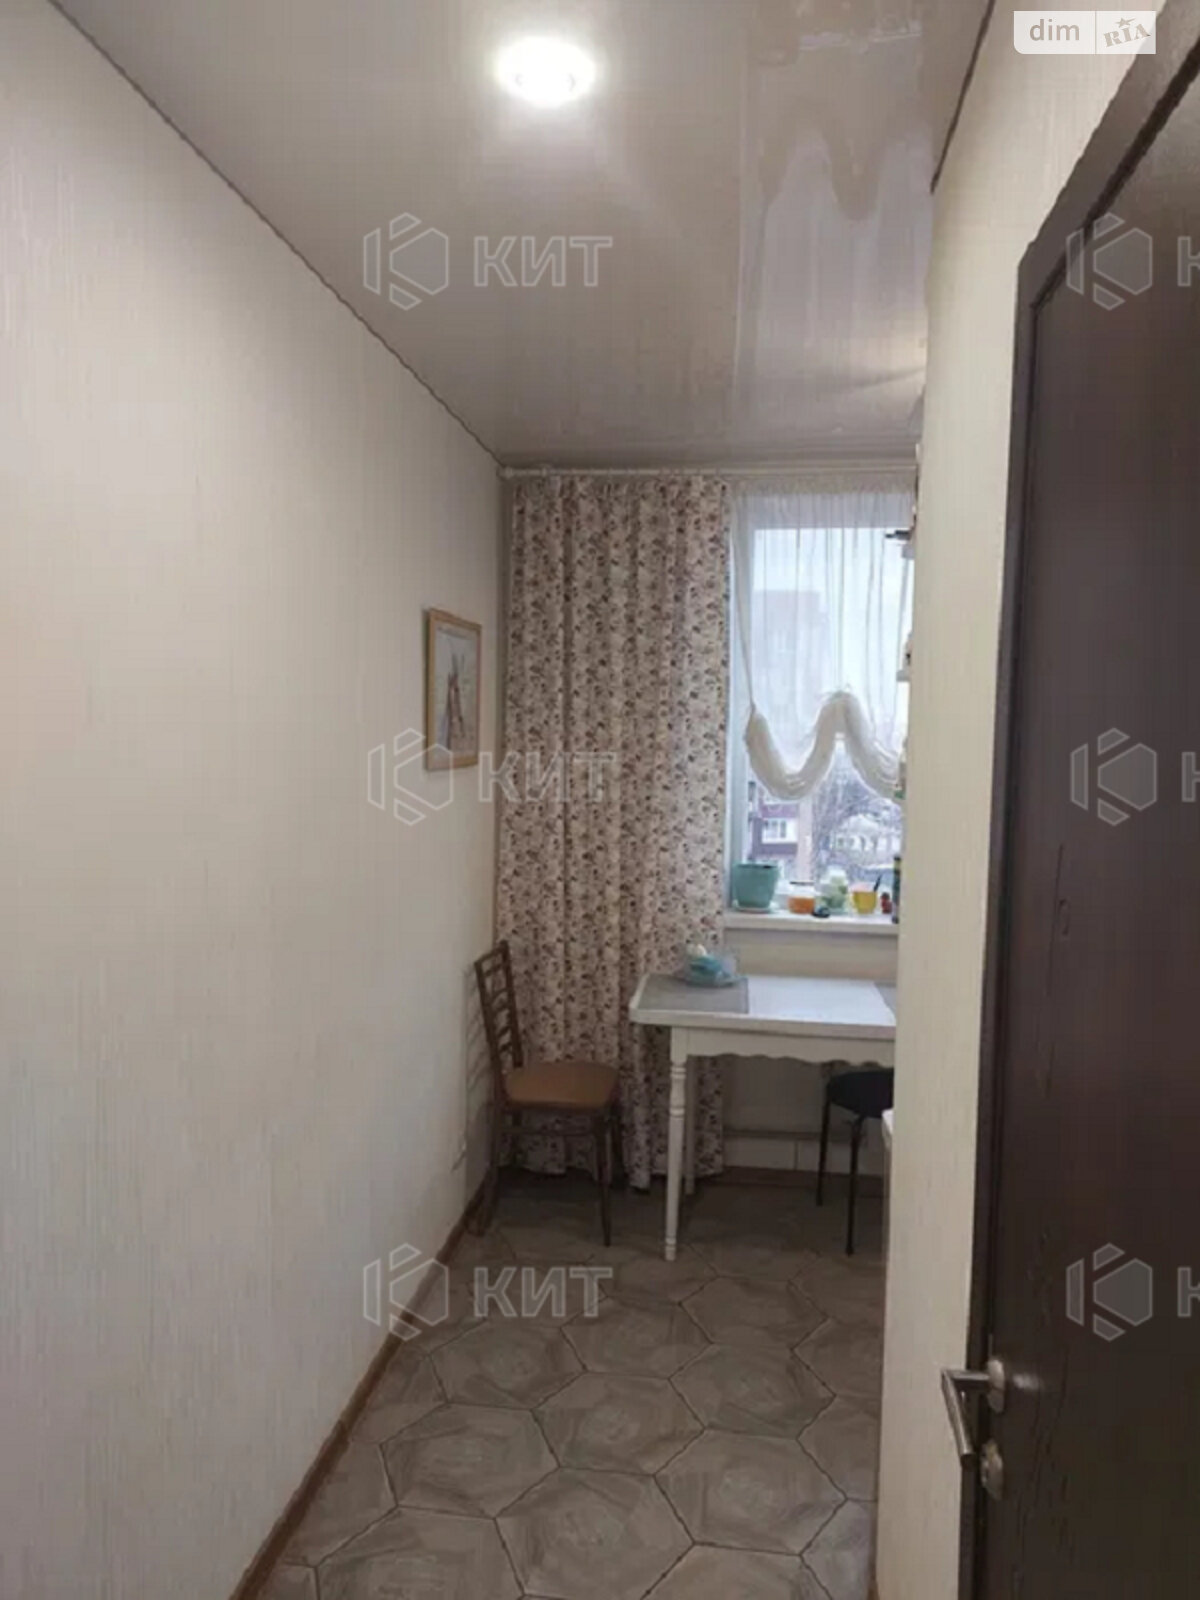 Продажа однокомнатной квартиры в Харькове, на ул. Болбочана Петра 7, район Холодная Гора фото 1